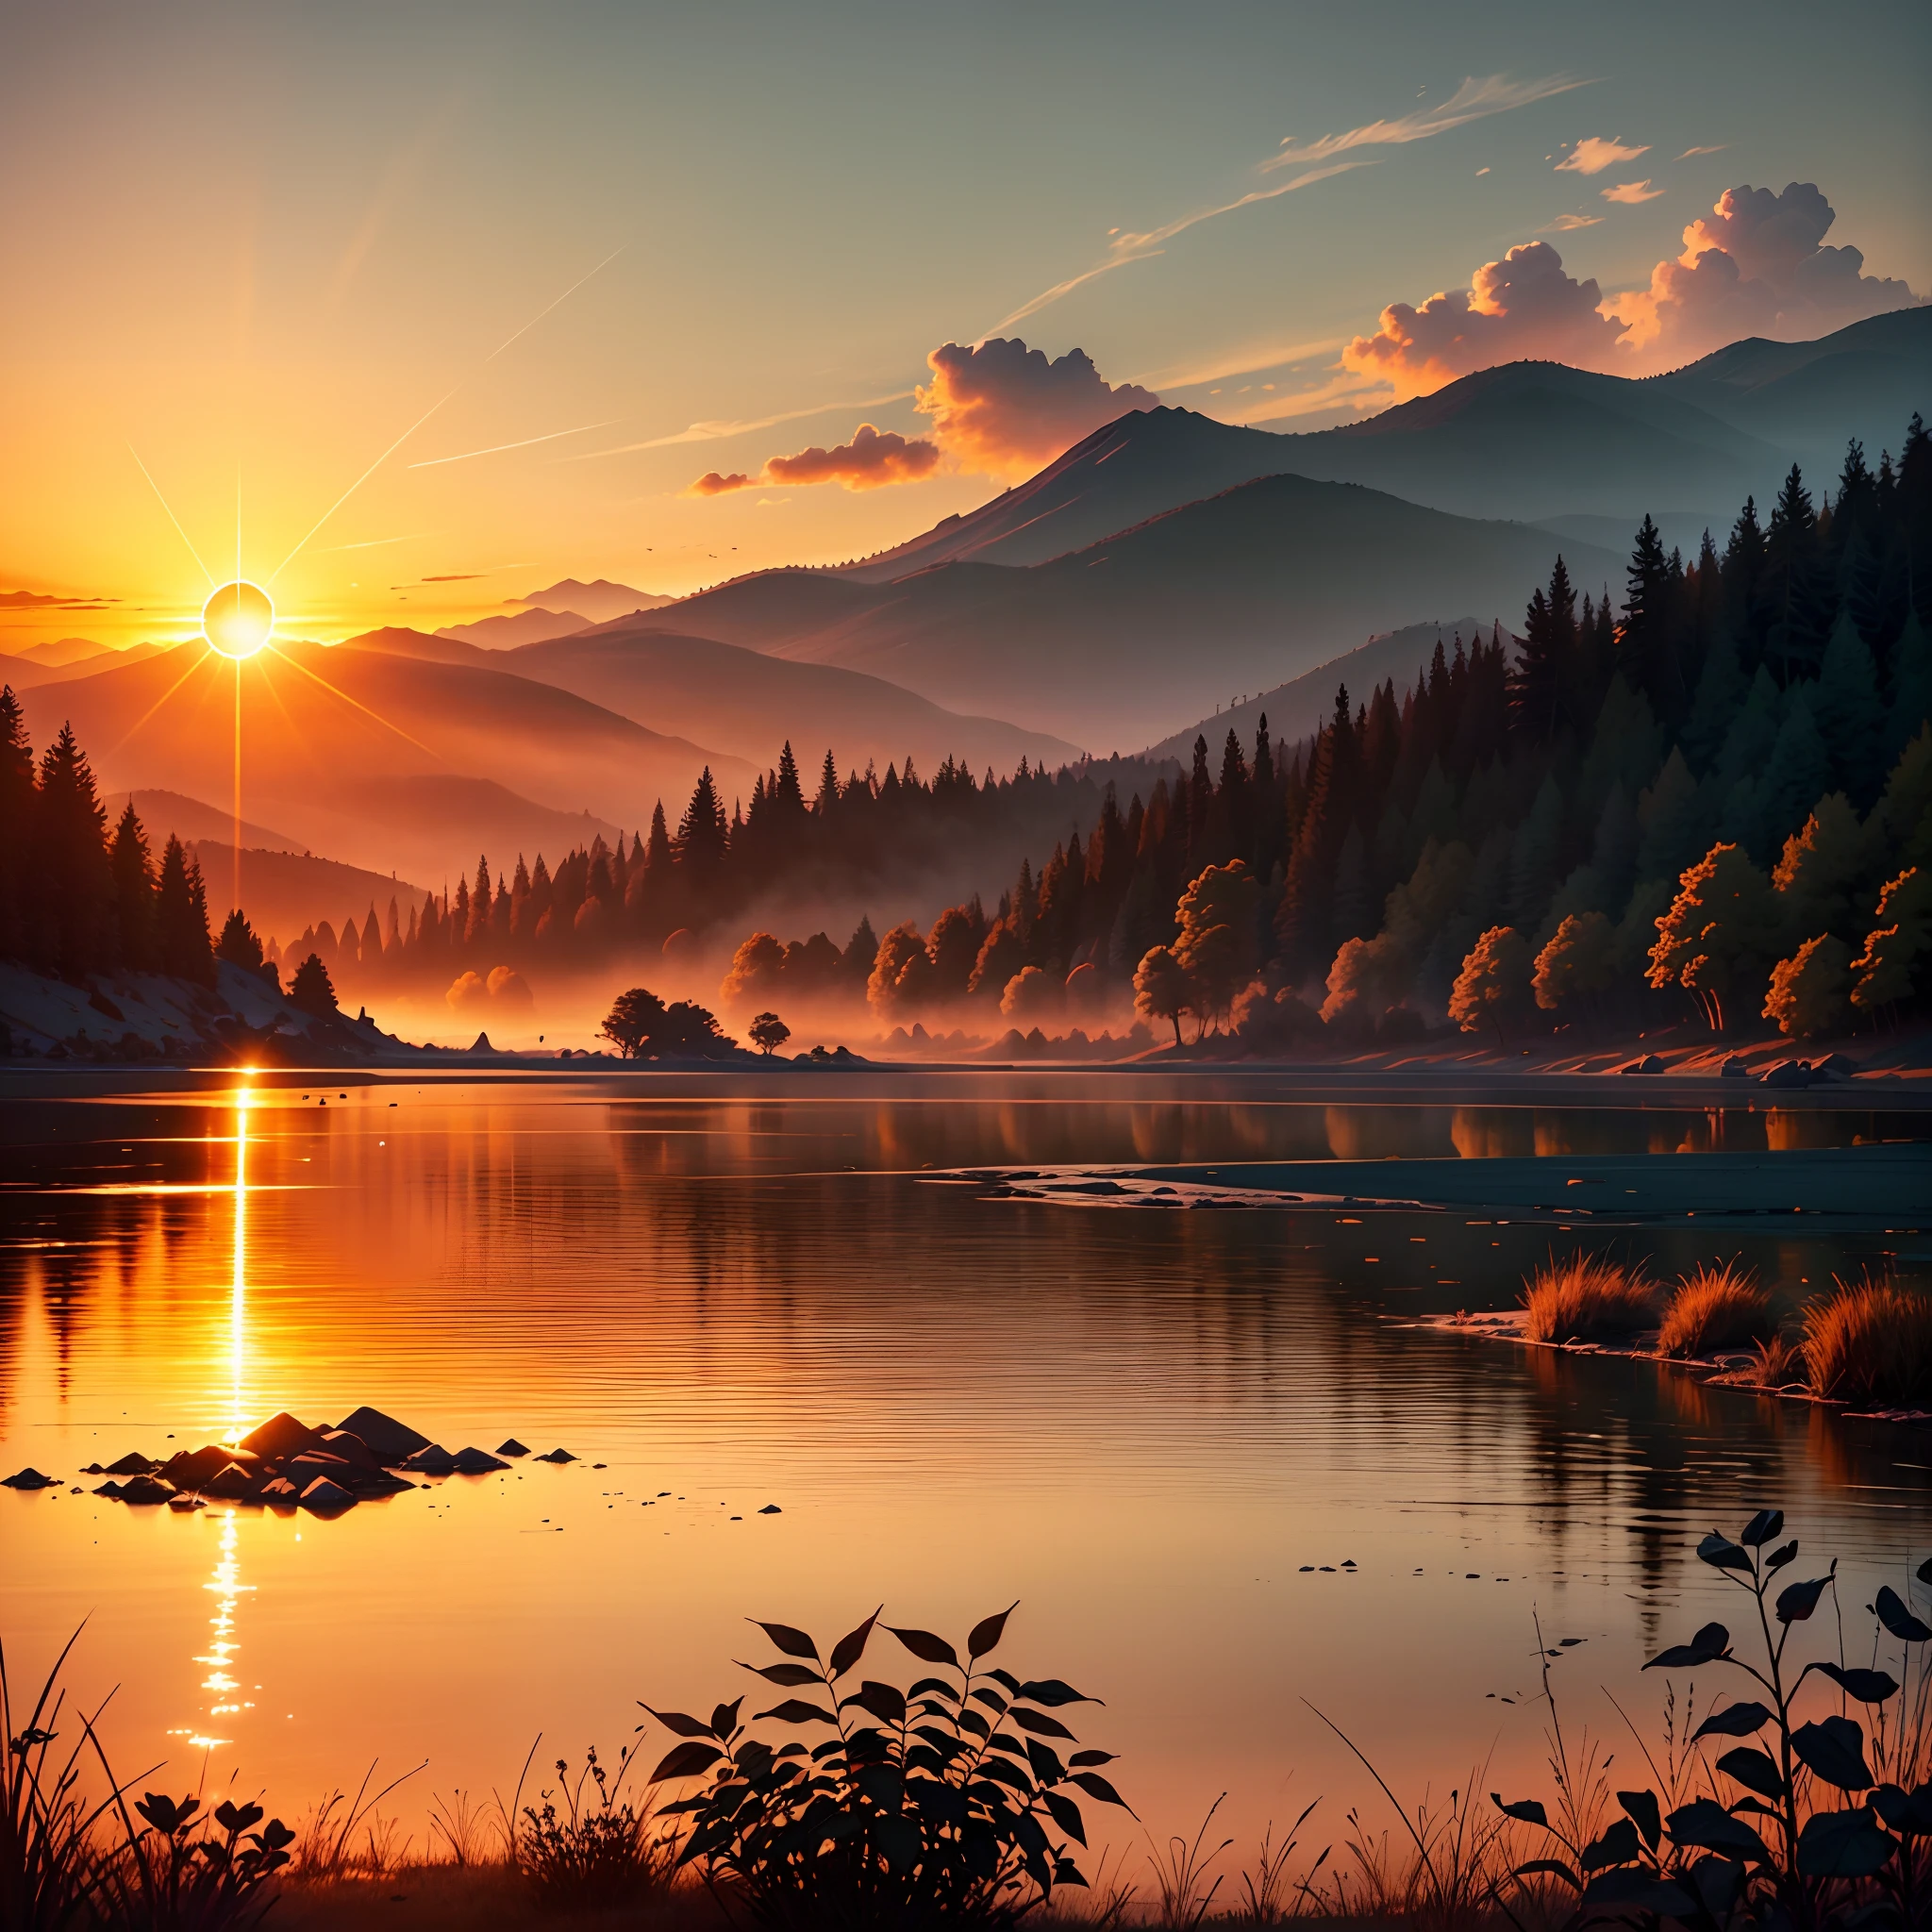 Una imagen que representa un amanecer radiante sobre un paisaje tranquilo y sereno.